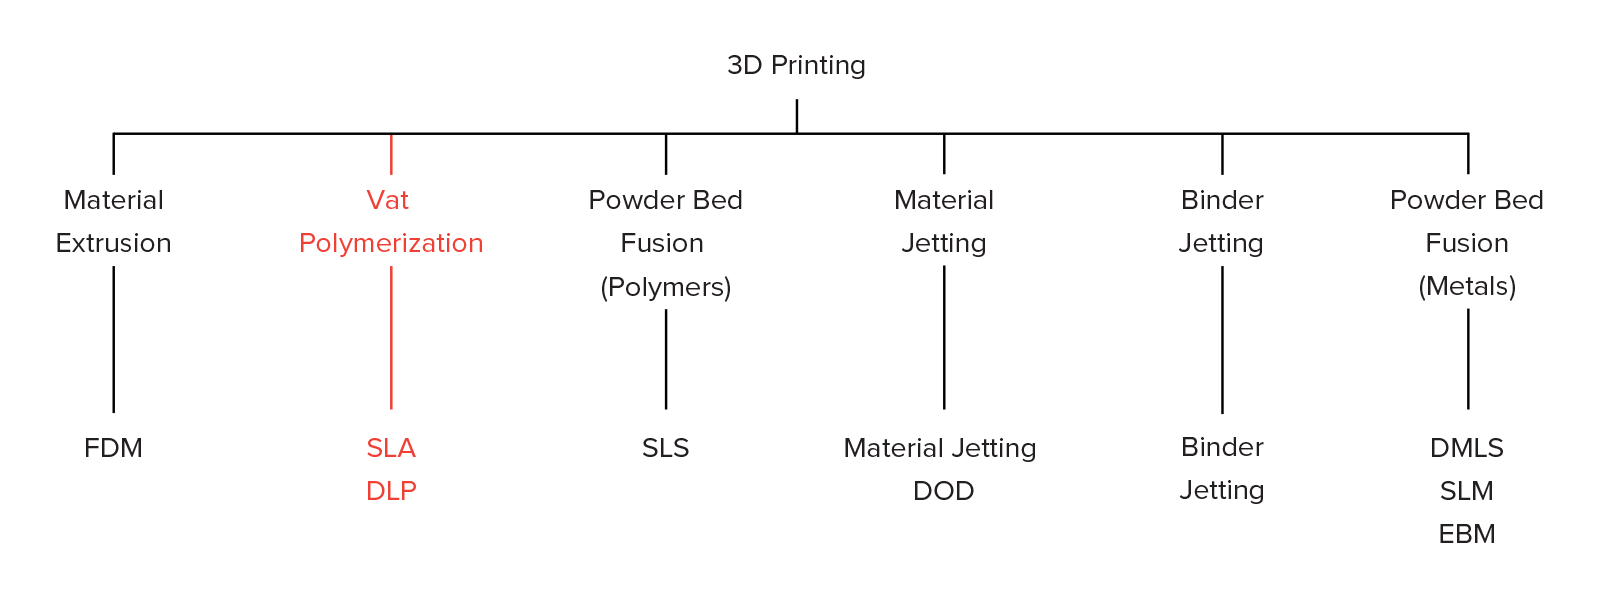 دسته بندی تکنولوژی های چاپ سه بعدی